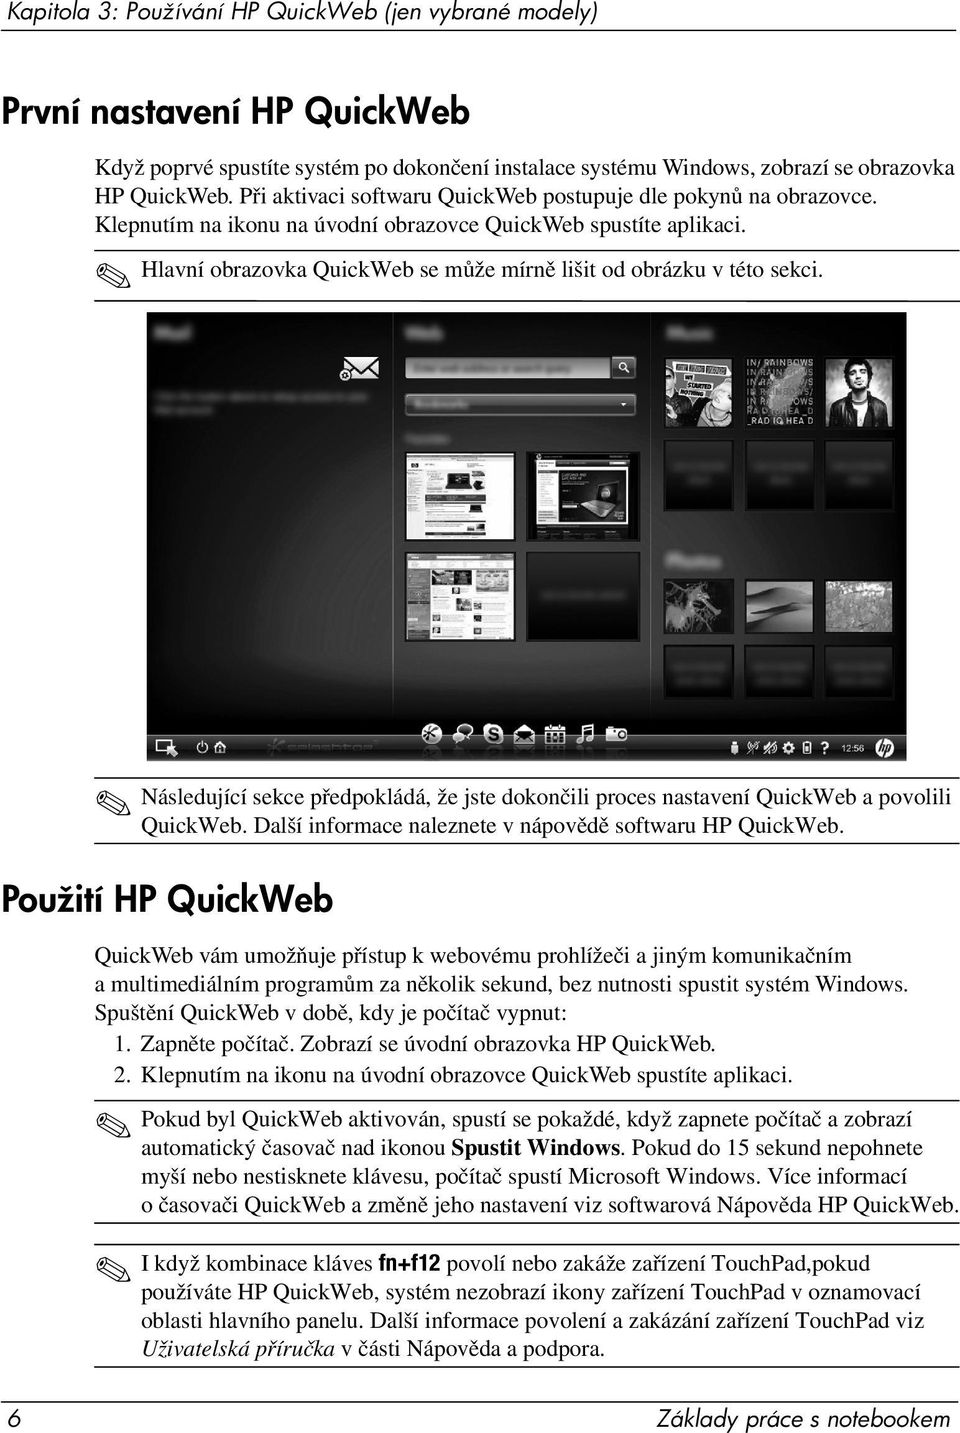 Hlavní obrazovka QuickWeb se může mírně lišit od obrázku v této sekci. Následující sekce předpokládá, že jste dokončili proces nastavení QuickWeb a povolili QuickWeb.